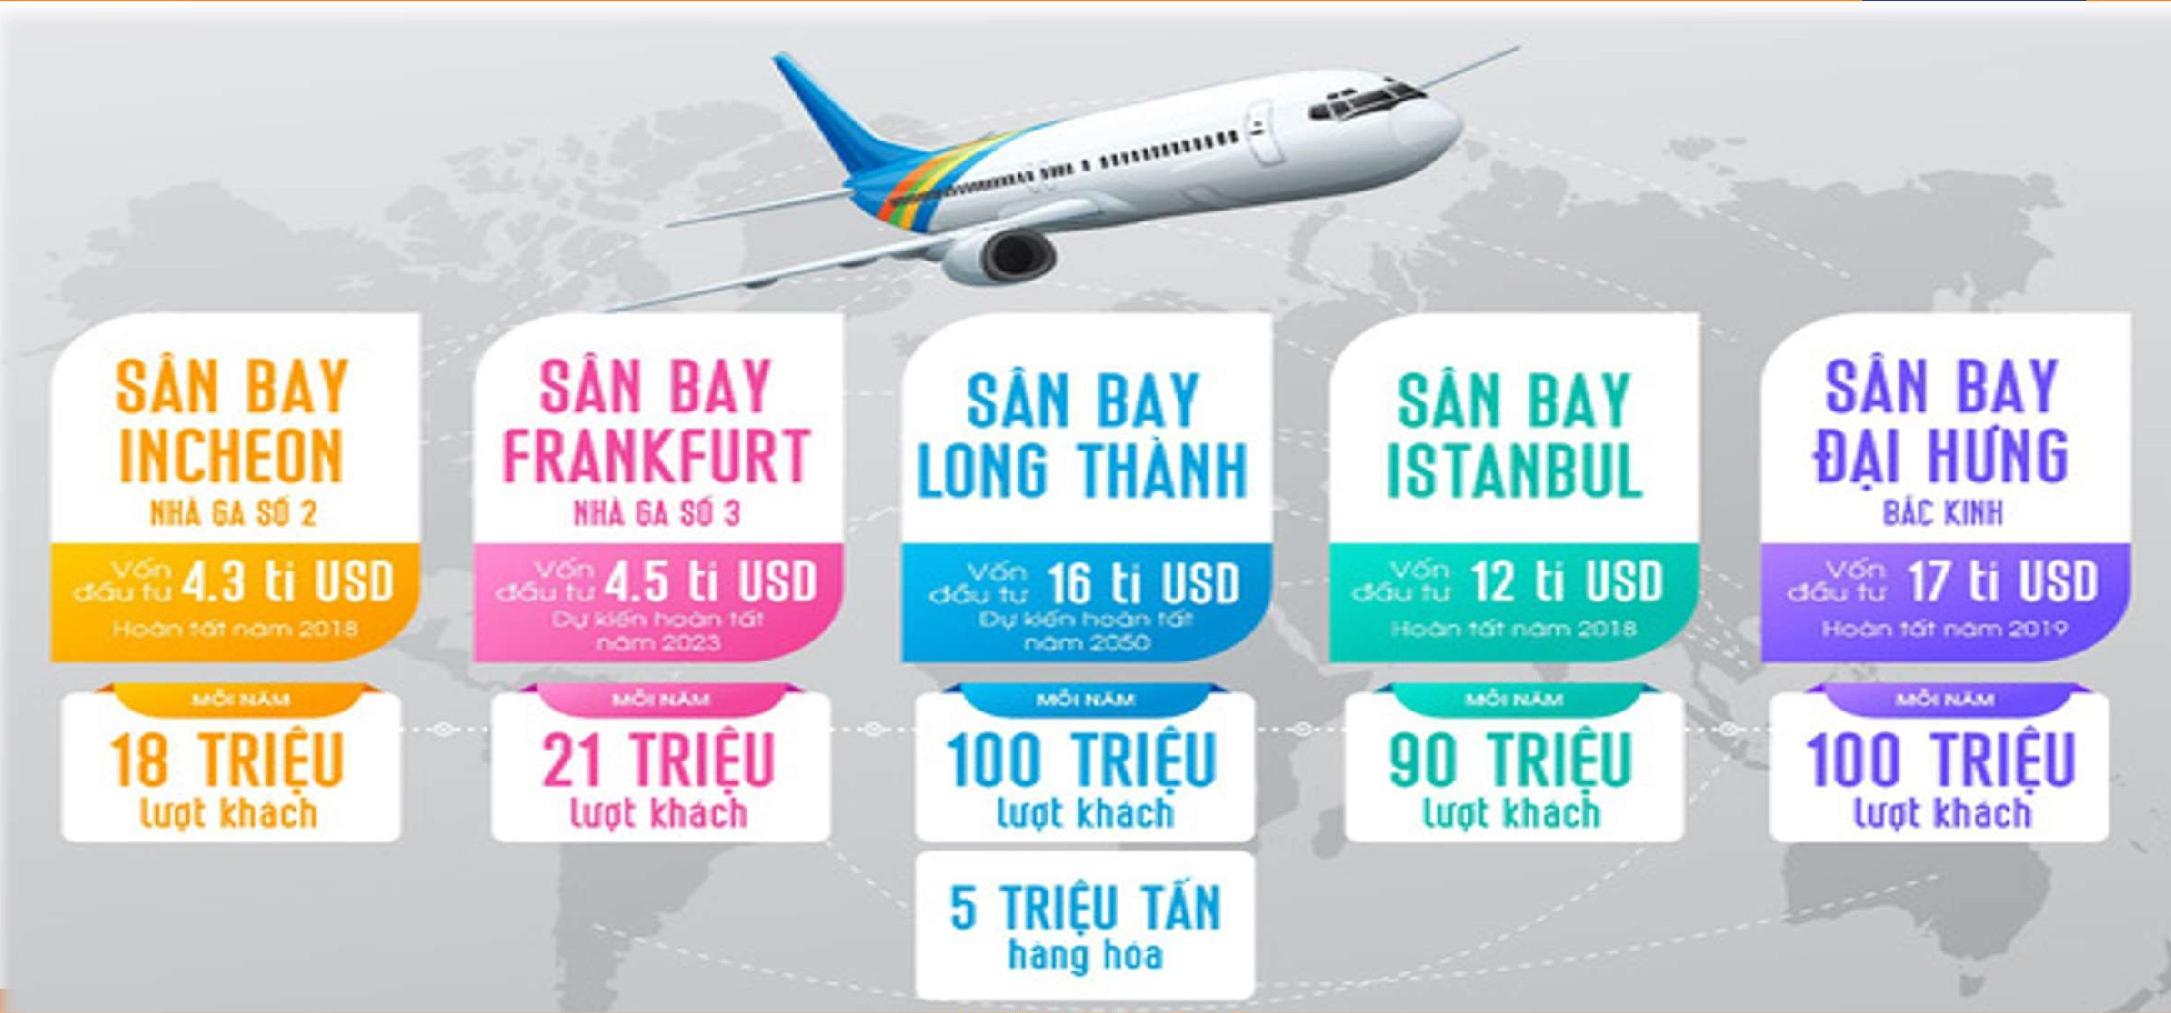 Bảng so sánh sân bay Quốc tế Long Thành với các sân bay Quốc tế trên Thế giới